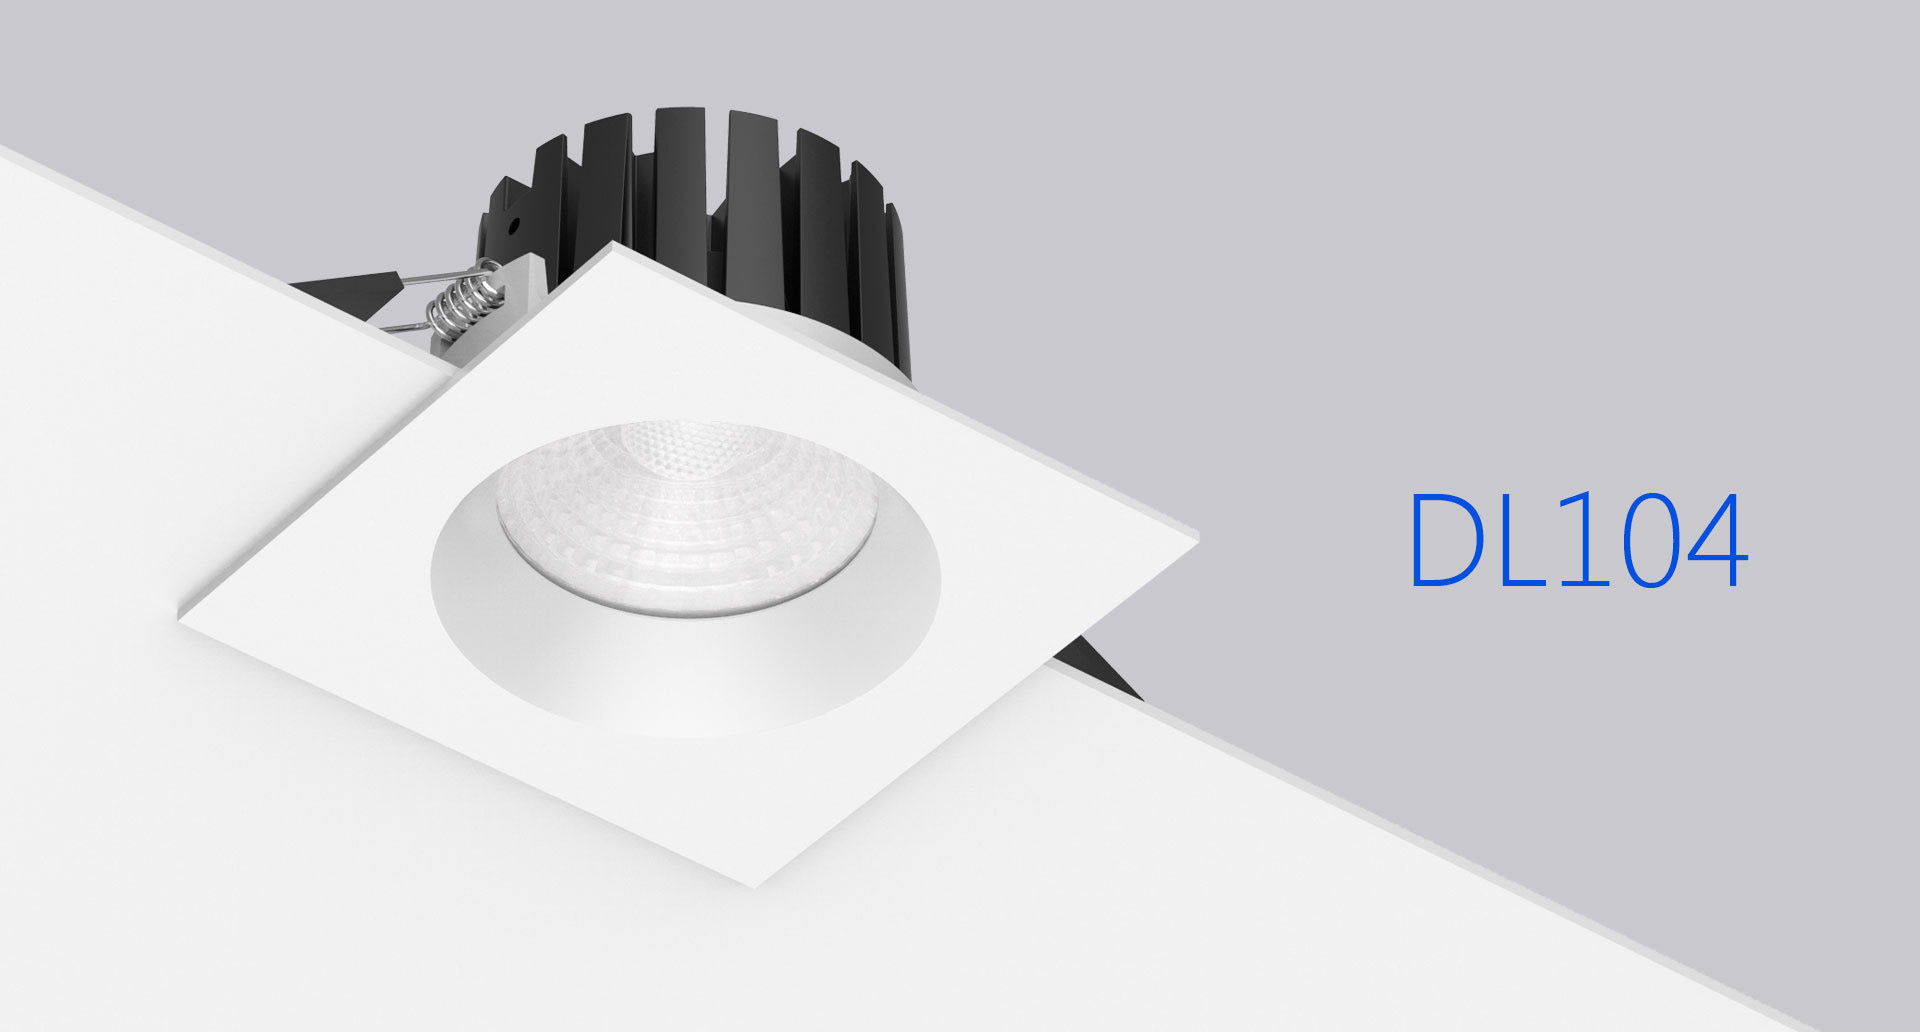 โคมไฟ LED Downlight รุ่น DL104 แบรนด์ BOX BRIGHT